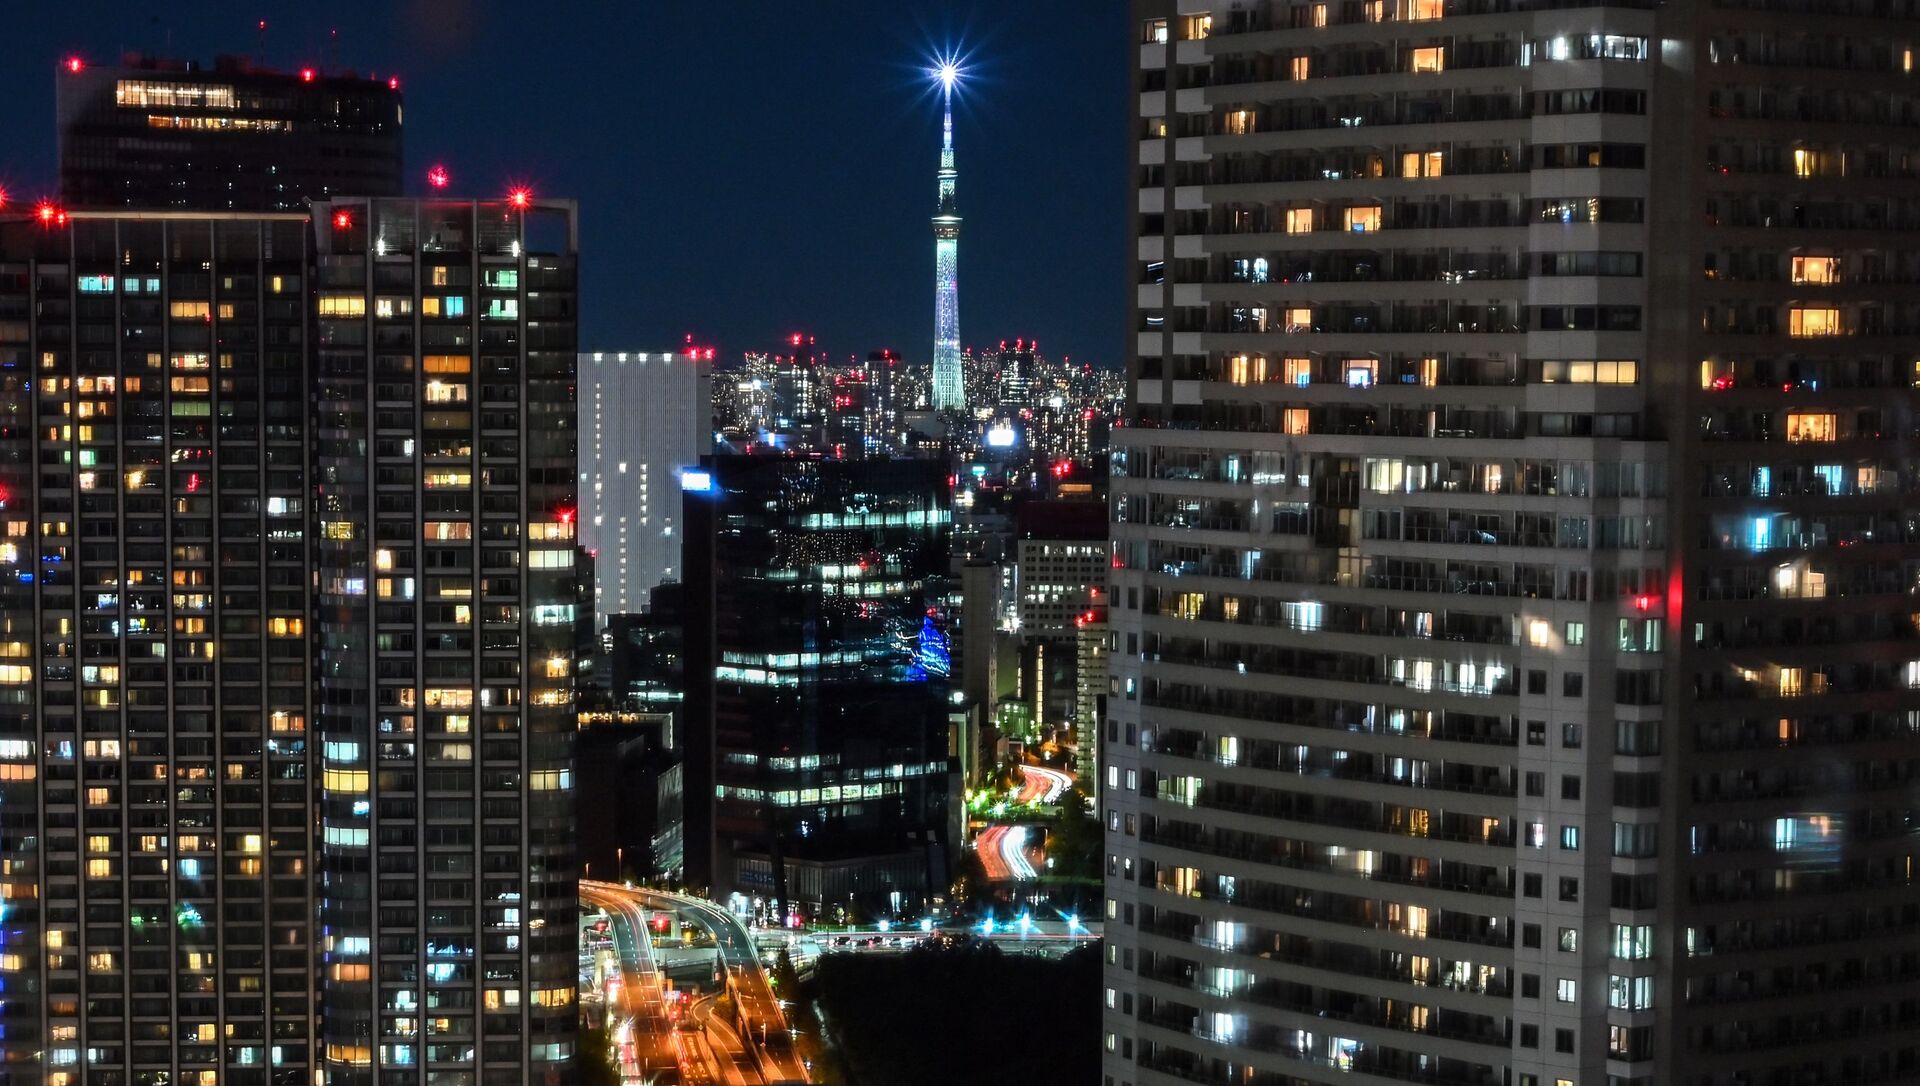 Общий вид зданий и небоскреба Tokyo Skytree (на заднем плане) в Токио 28 ноября 2020 г. - Sputnik Абхазия, 1920, 26.07.2021